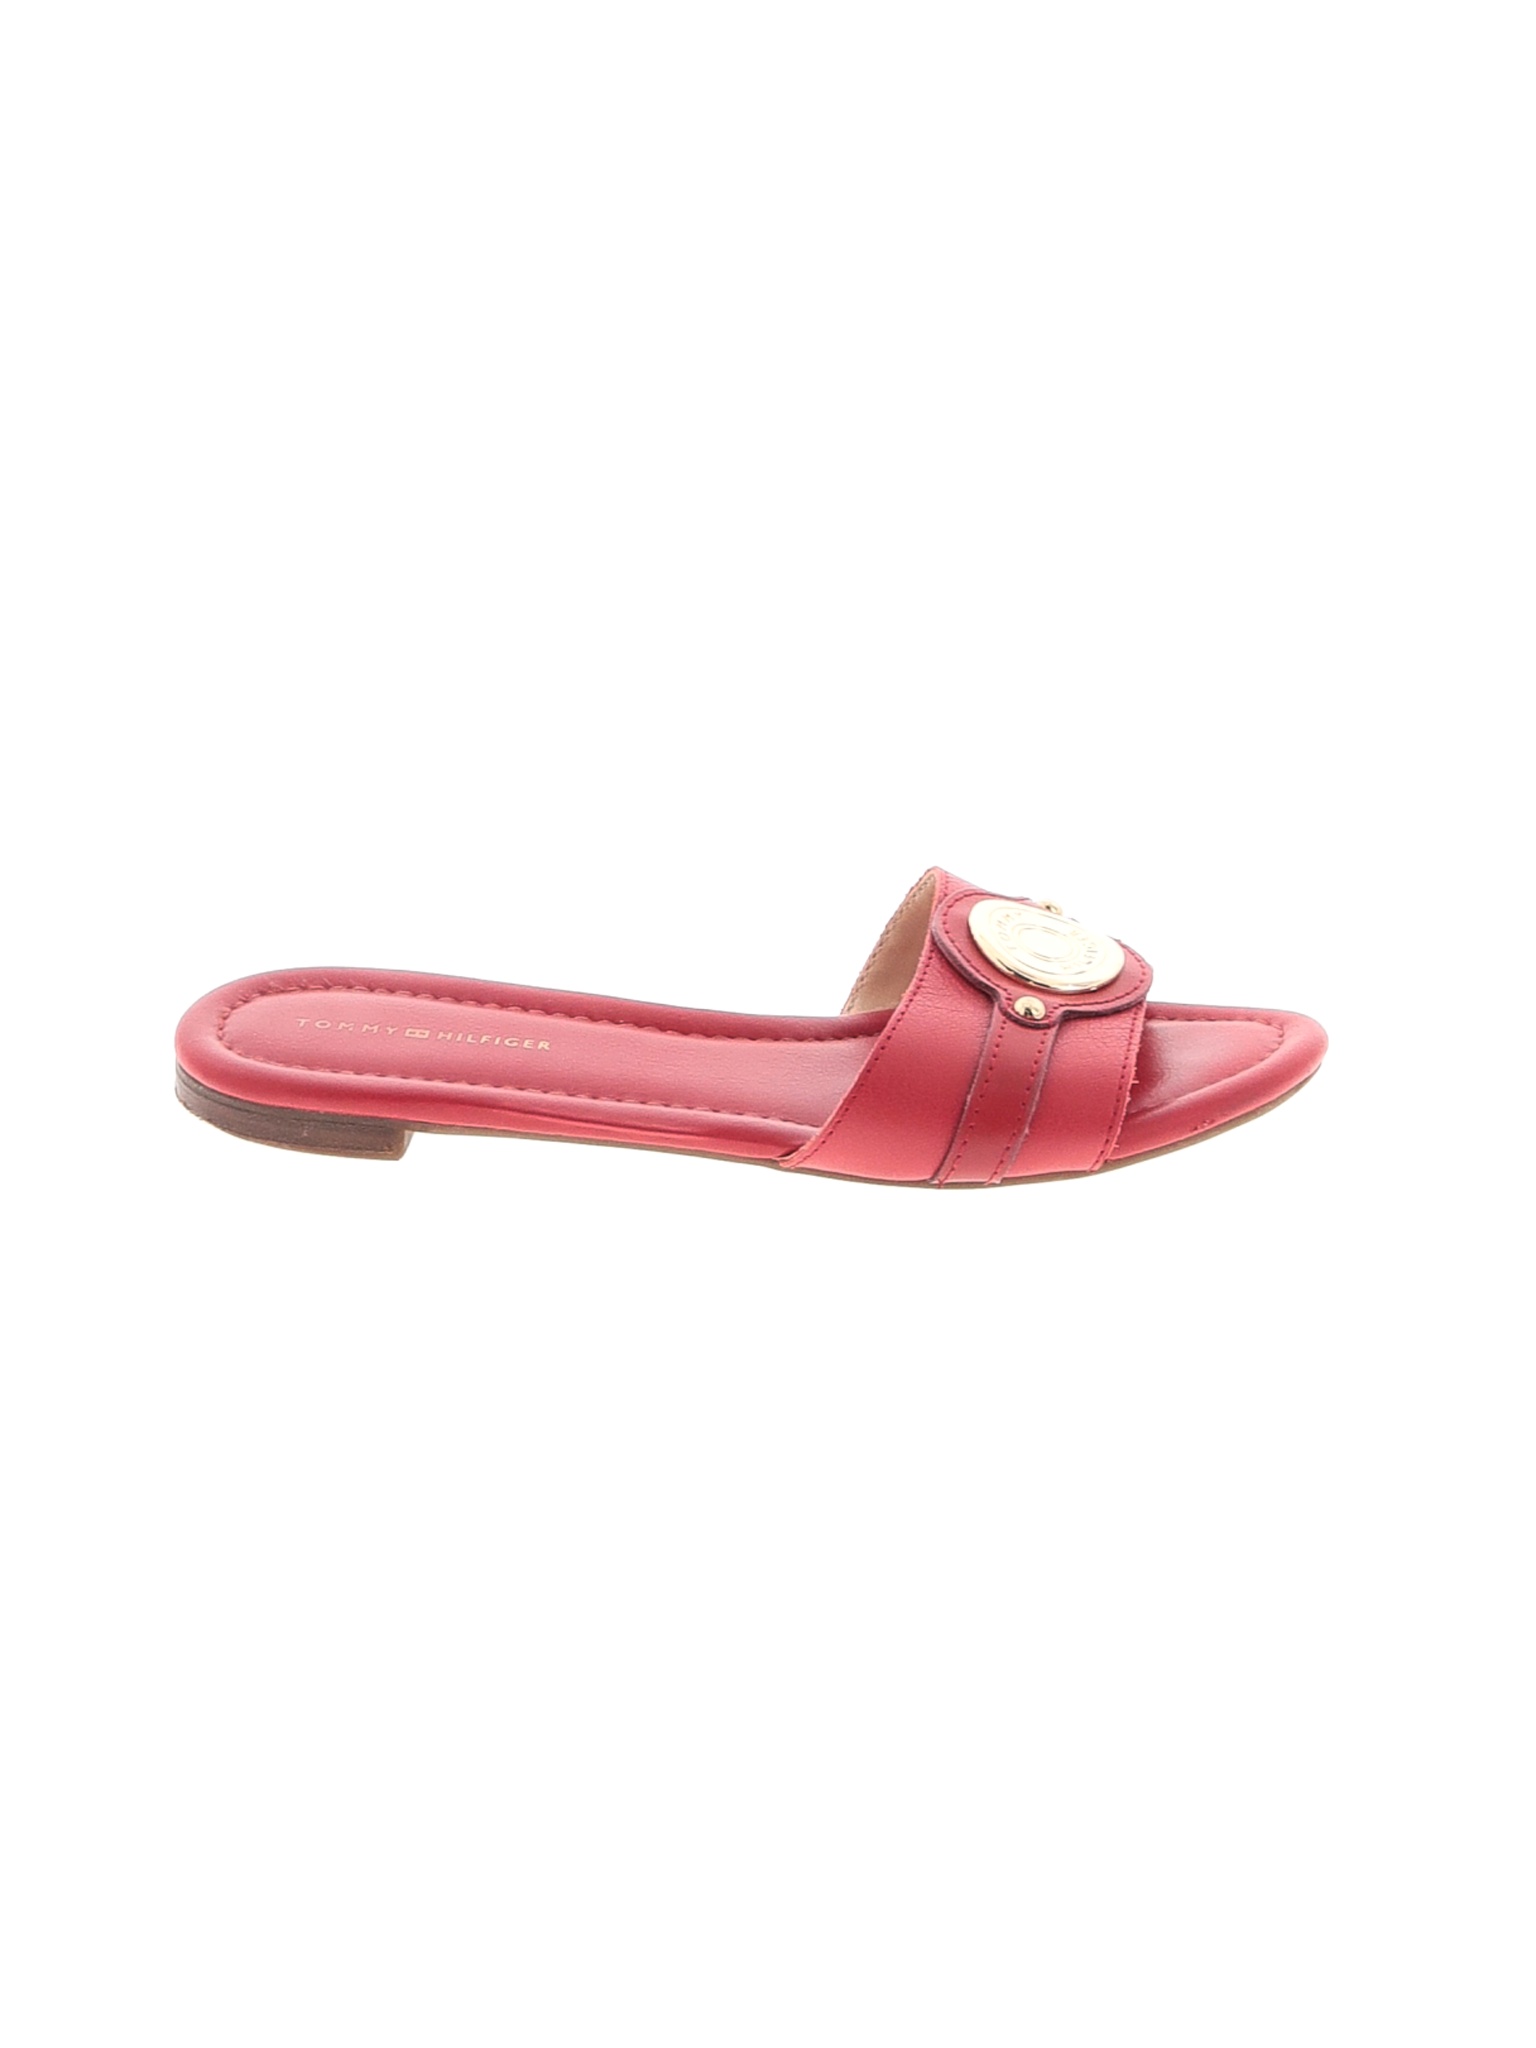 Tommy Hilfiger Women Red Sandals US 6.5 | eBay